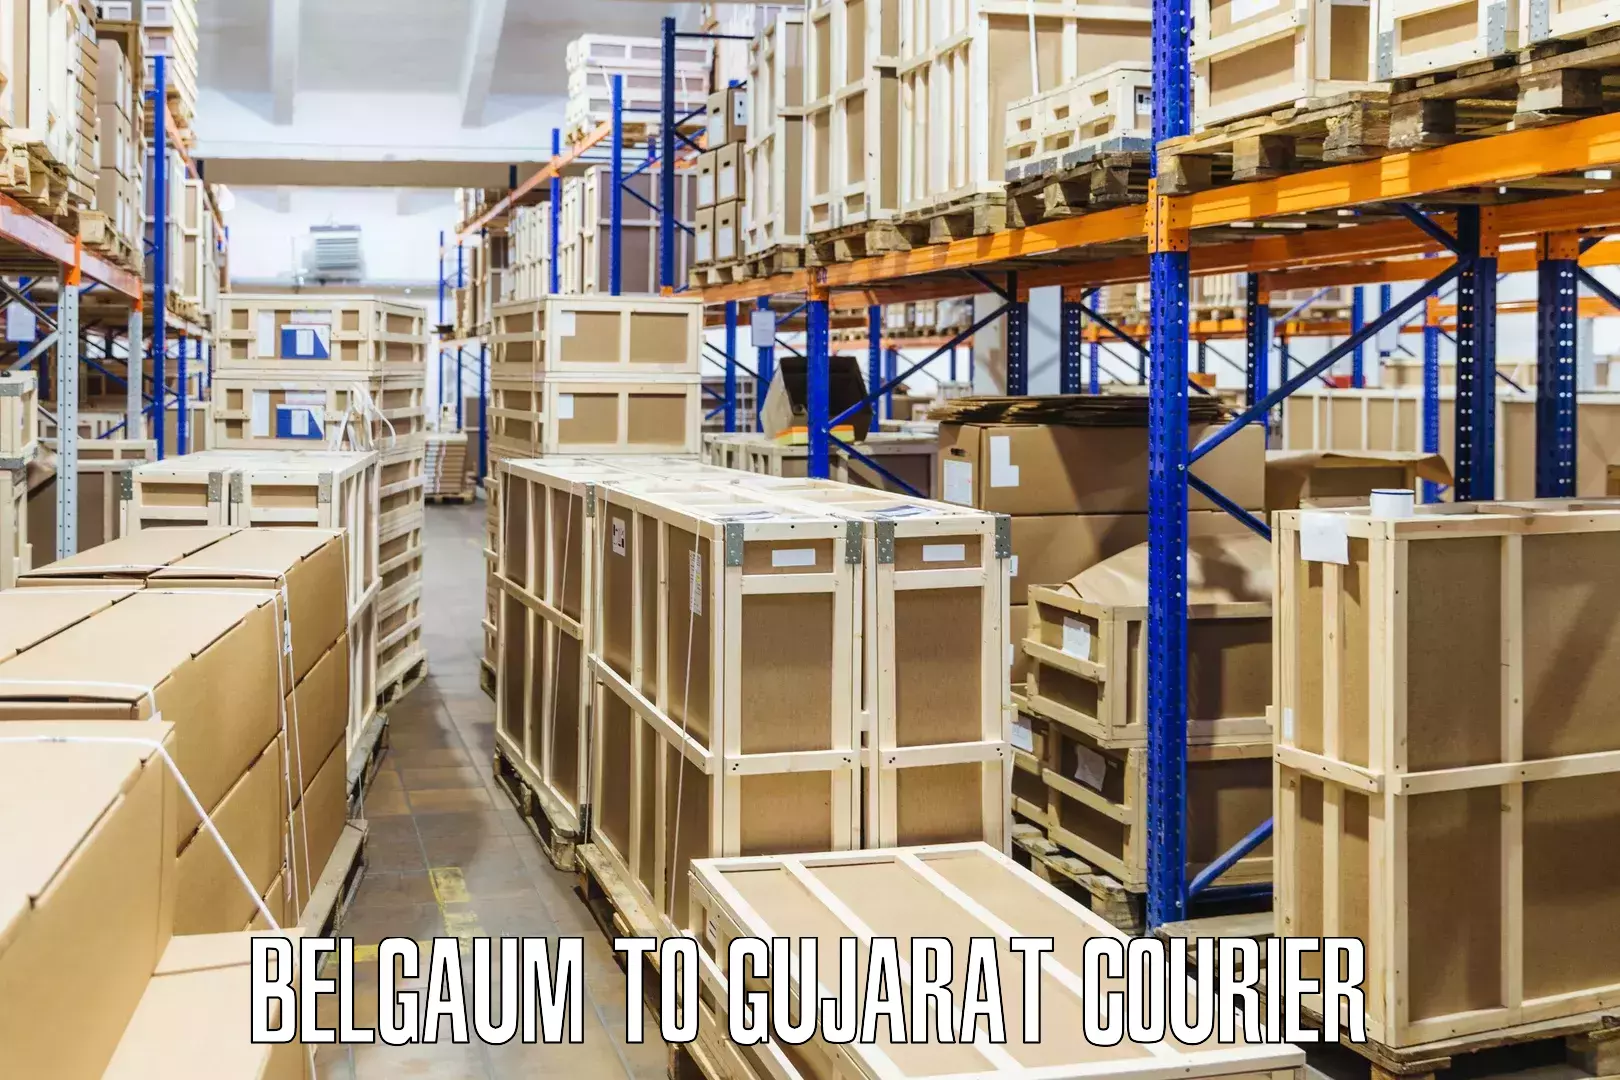 Courier service comparison Belgaum to Kalavad